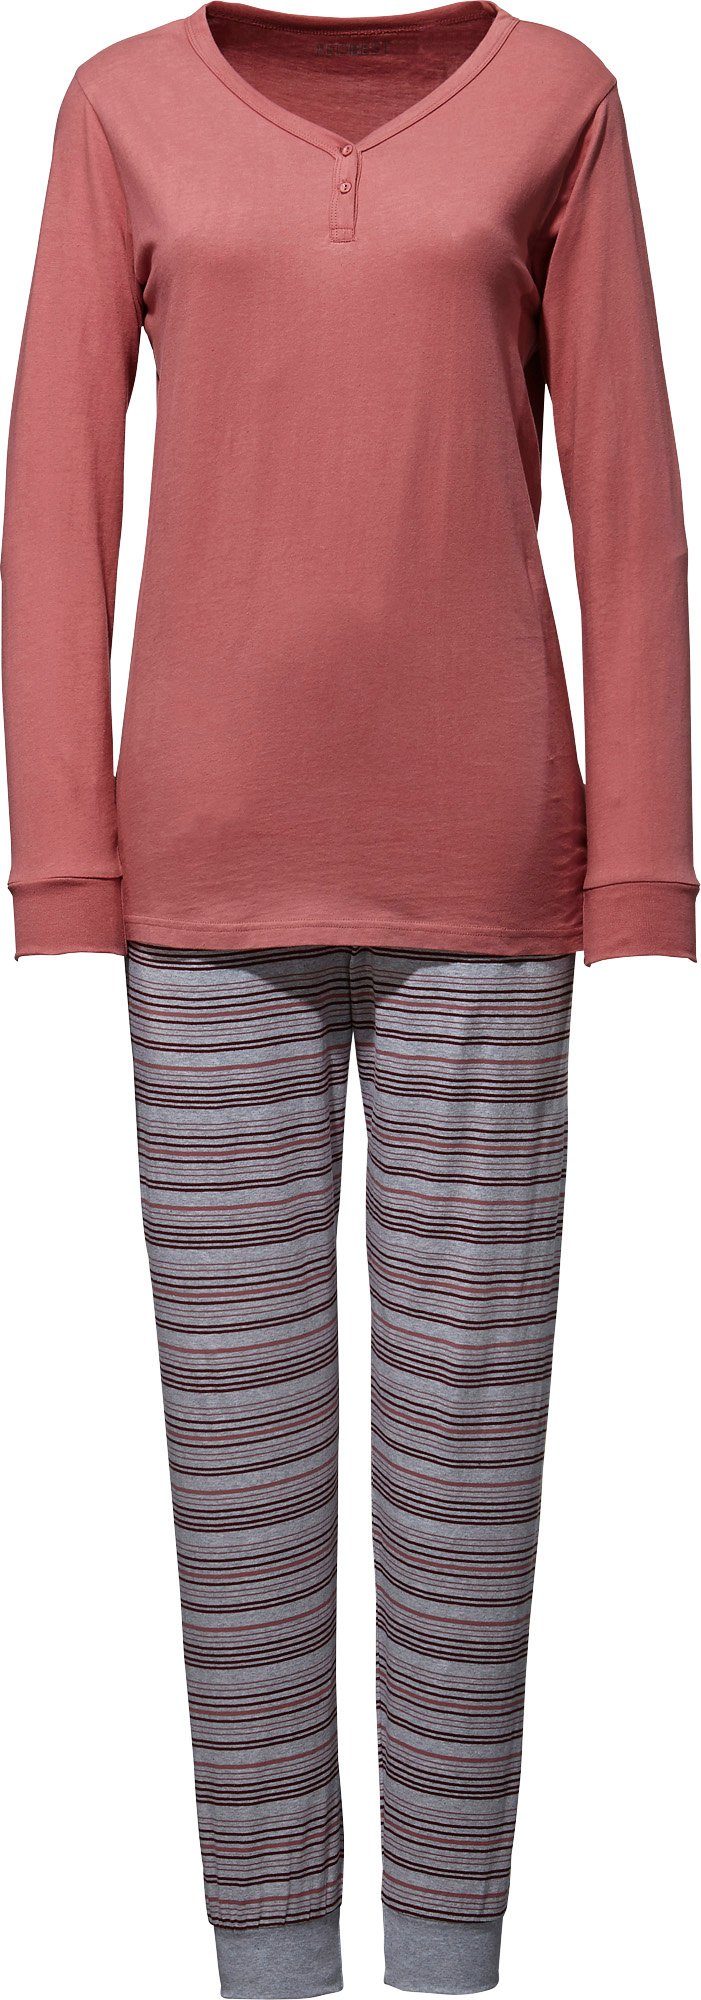 Streifen REDBEST Pyjama Damen-Schlafanzug Single-Jersey